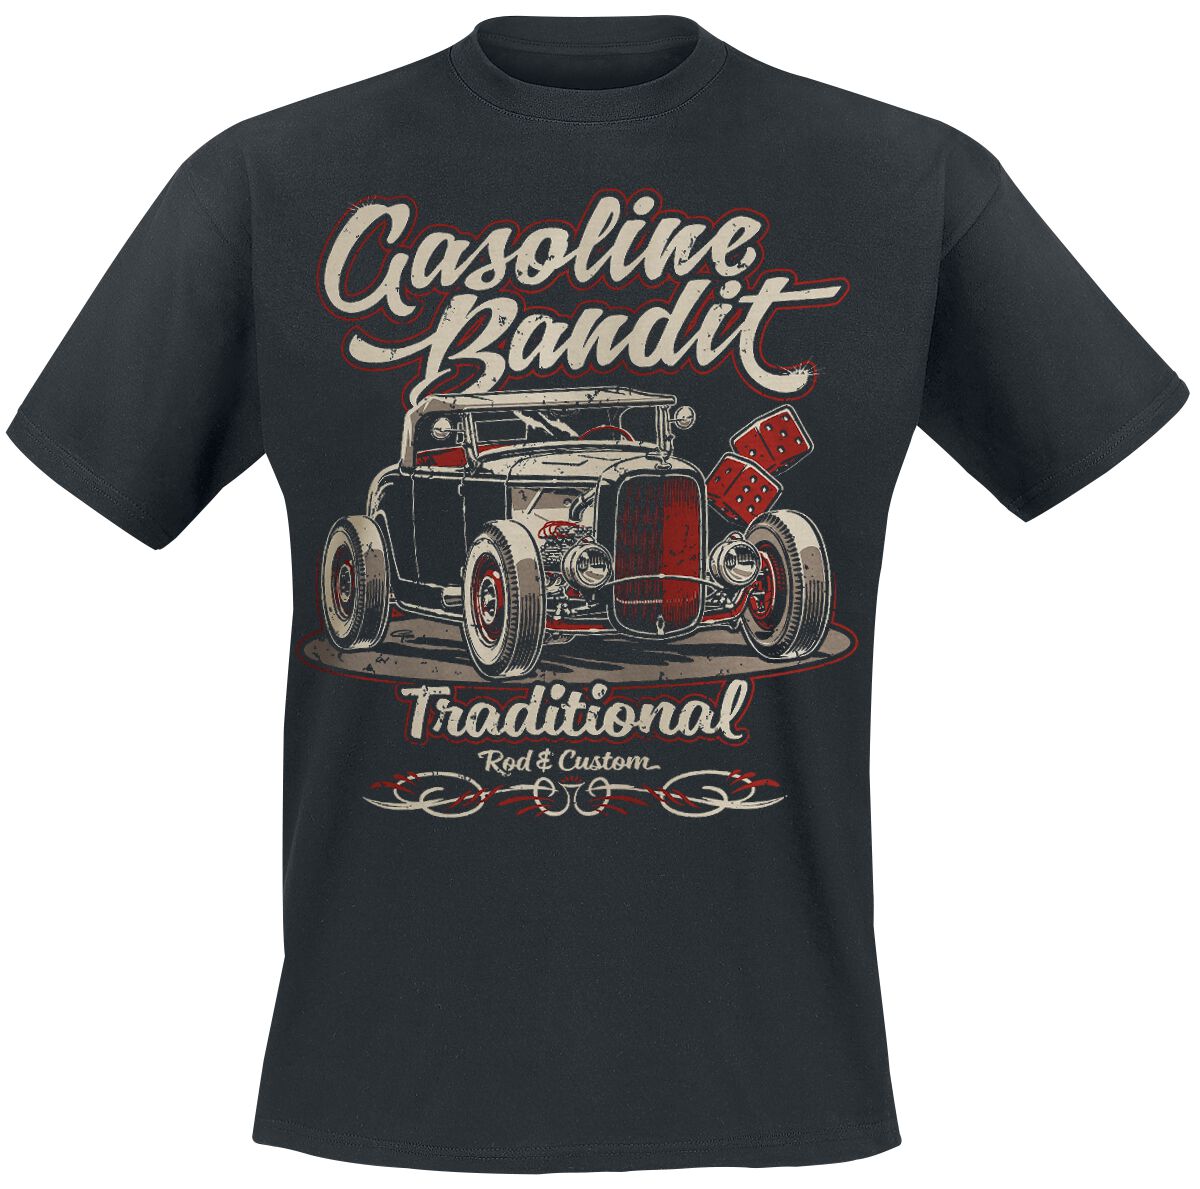 Gasoline Bandit - Rockabilly T-Shirt - Traditional - S bis XXL - für Männer - Größe S - schwarz